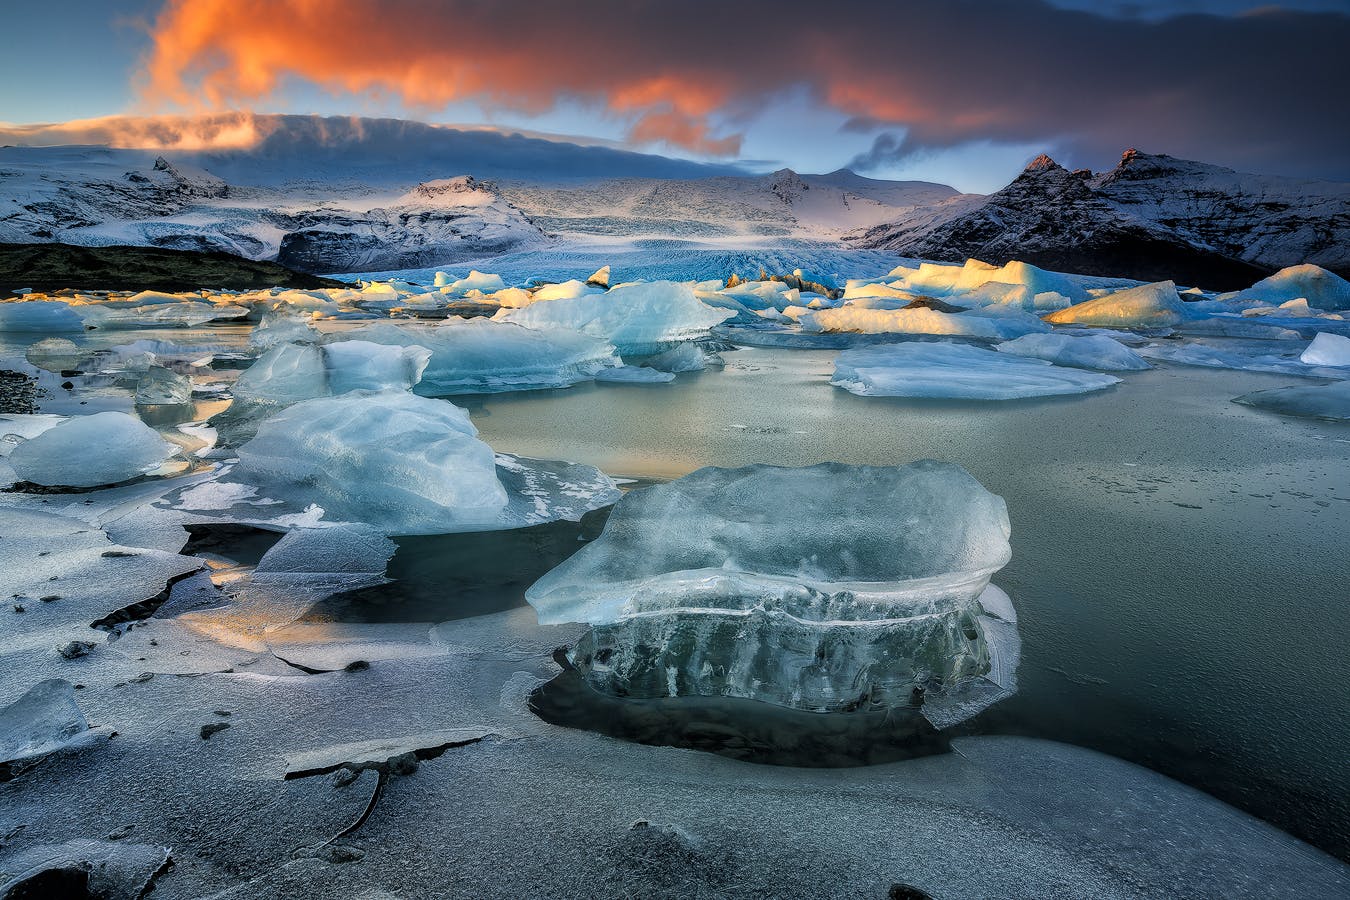 Ta 13-dniowa samodzielna wycieczka budżetowa zabierze Cię do laguny lodowcowej Jökulsárlón, klejnotu koronnego Islandii.